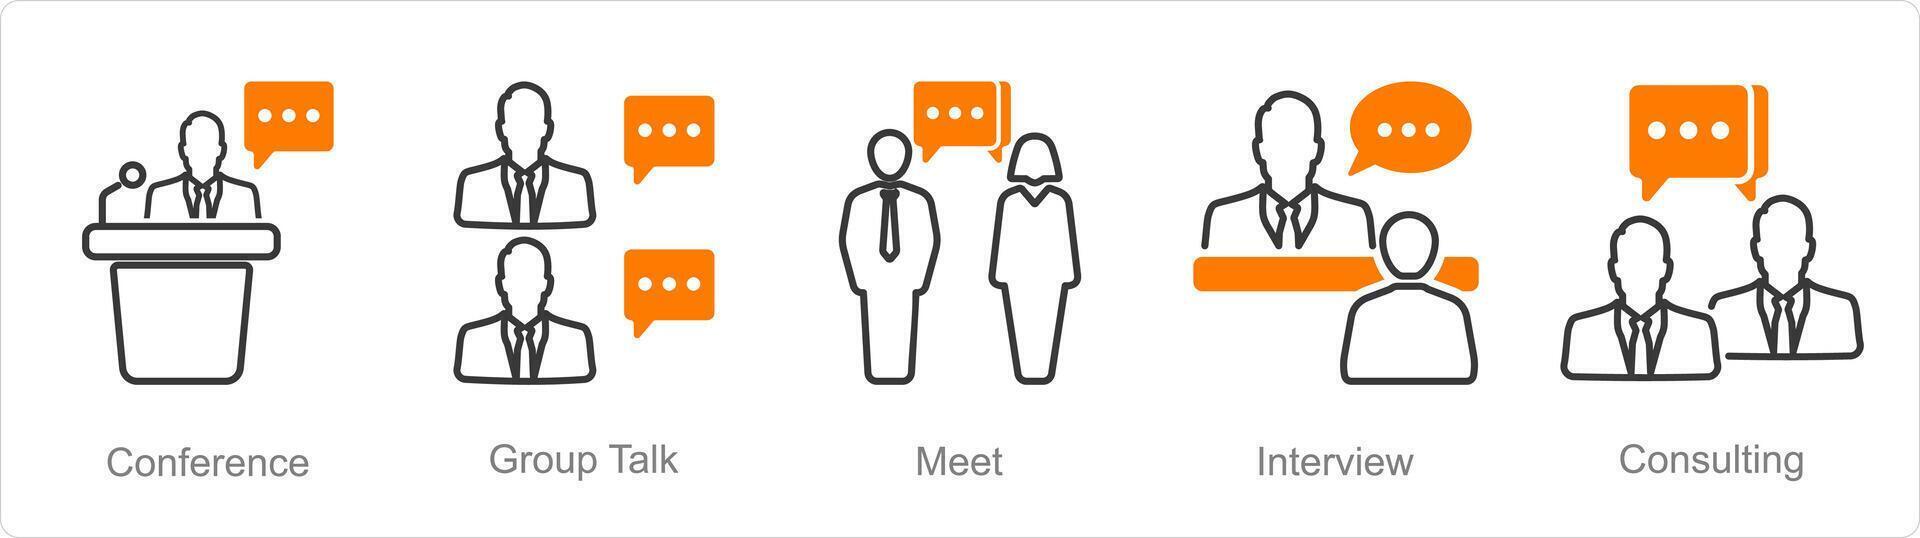 un' impostato di 5 incontro icone come conferenza, gruppo parlare, incontrare vettore